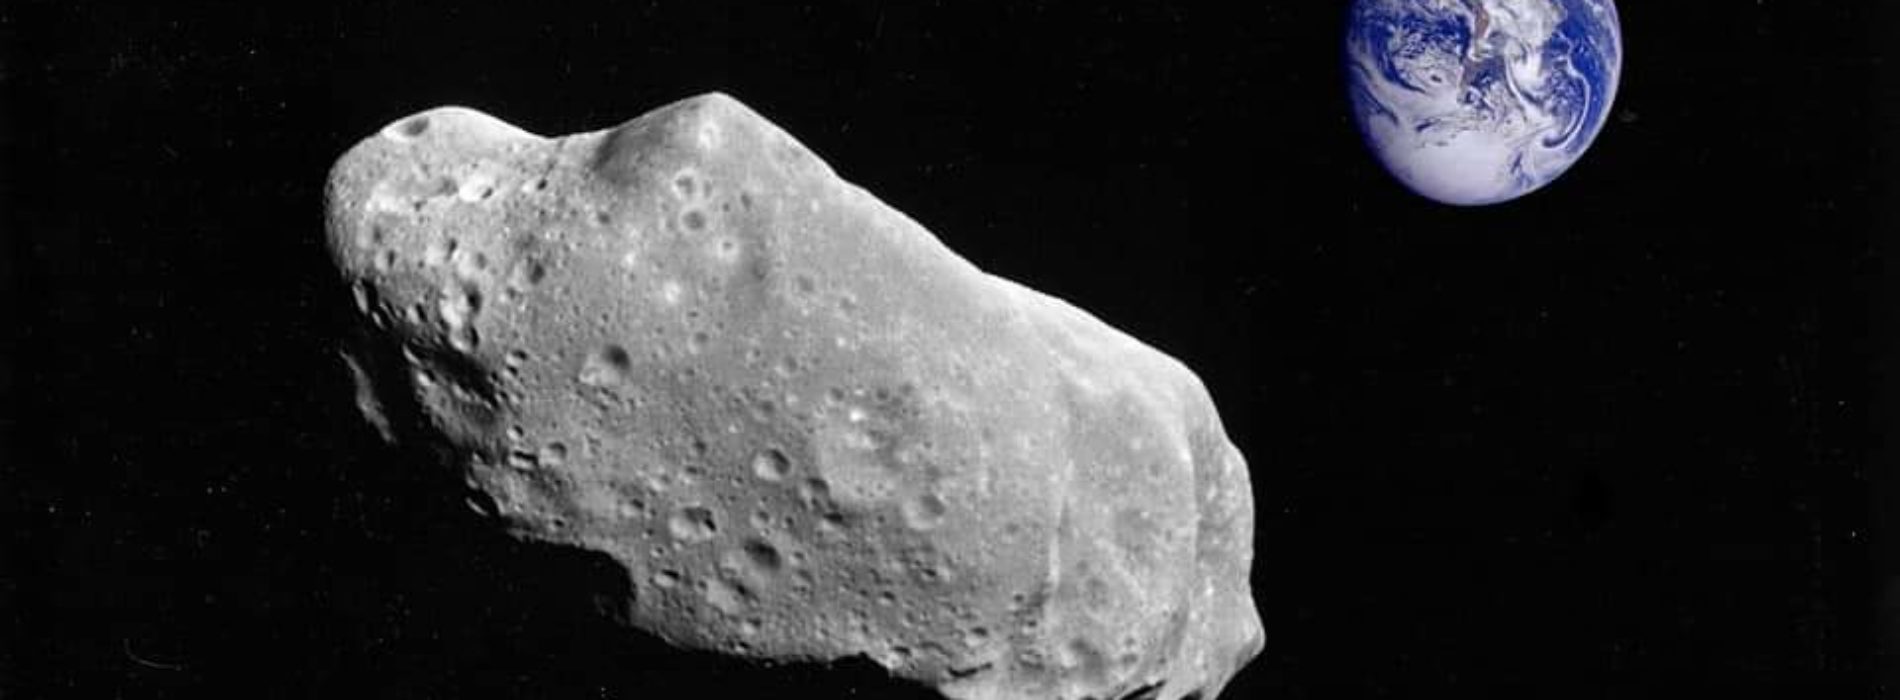 Asteroide gigante pasará muy cerca de la Tierra el 18 de enero de 2022